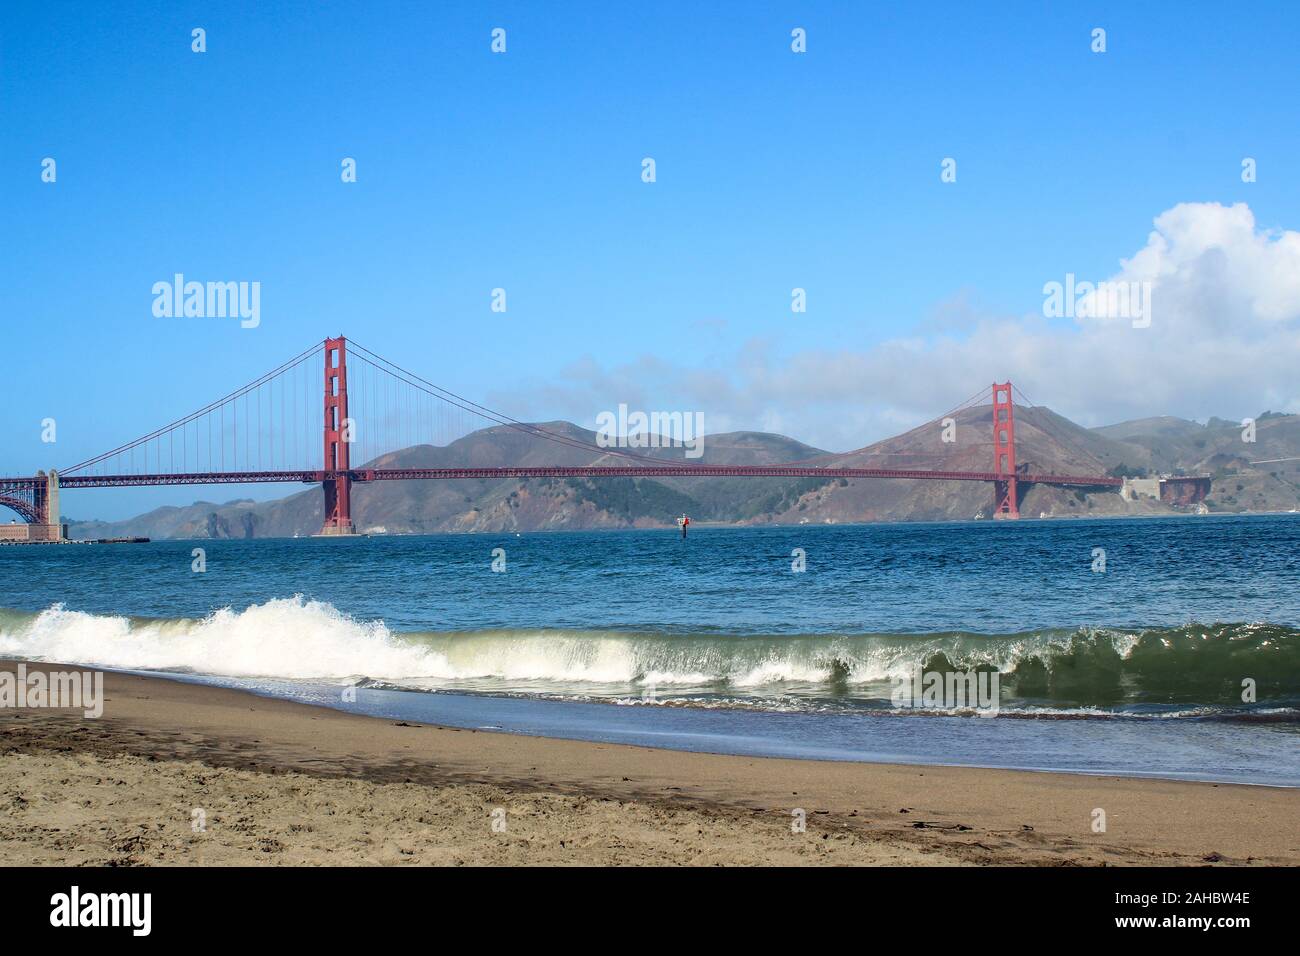 Internationale orange Golden Gate Bridge mit Wellen auf dem Brechen zu Crissy Field Erholungsgebiet Strand vor. San Francisco, USA. Stockfoto